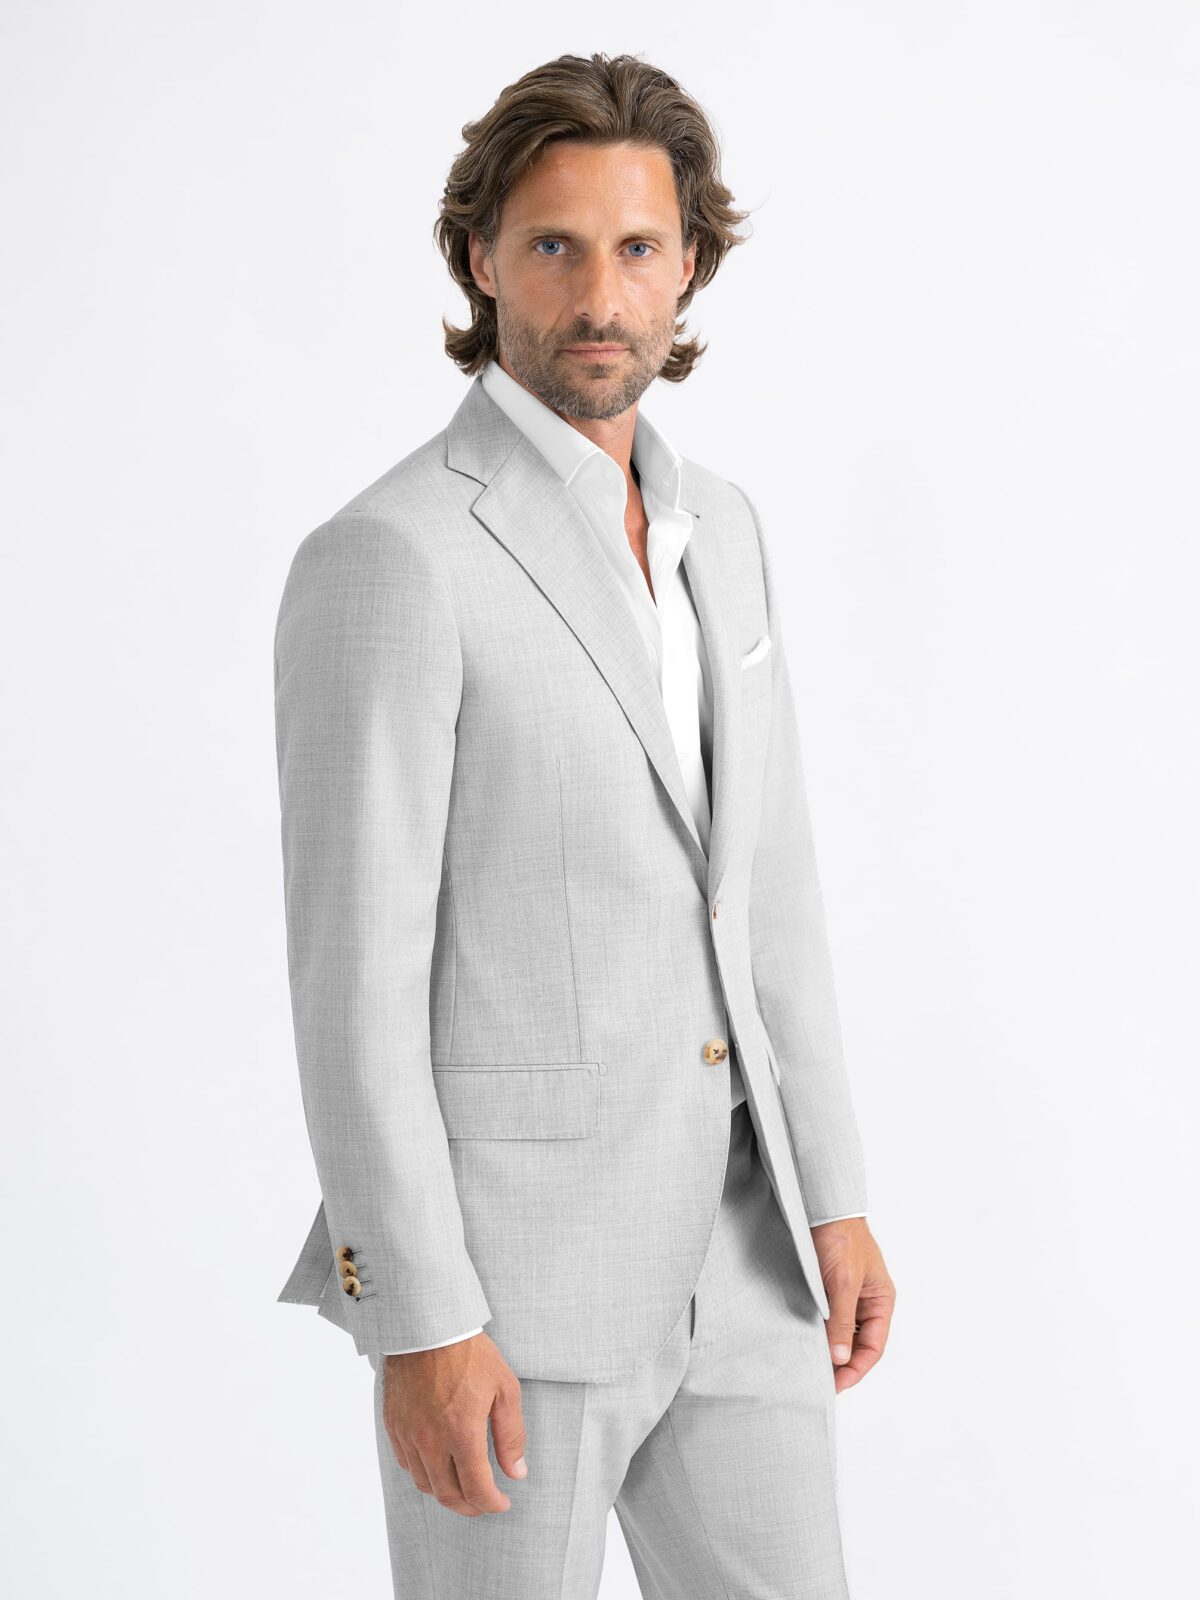 Drago Light Grey Tropical Wool S130s Allen Suit - Custom Fit ...